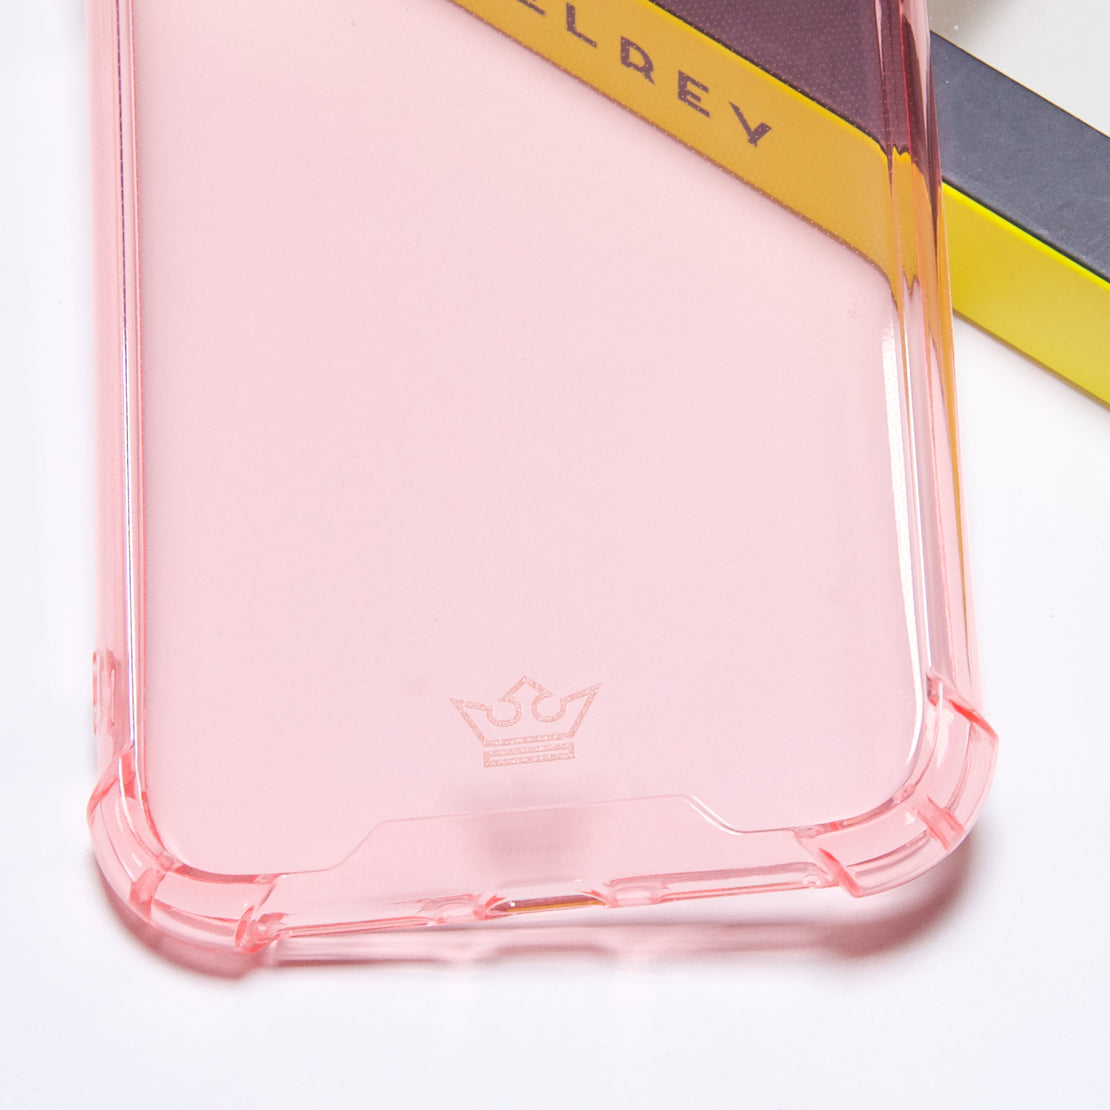 Estuche EL REY hard case flexible reforzado rosado  iphone 11 pro